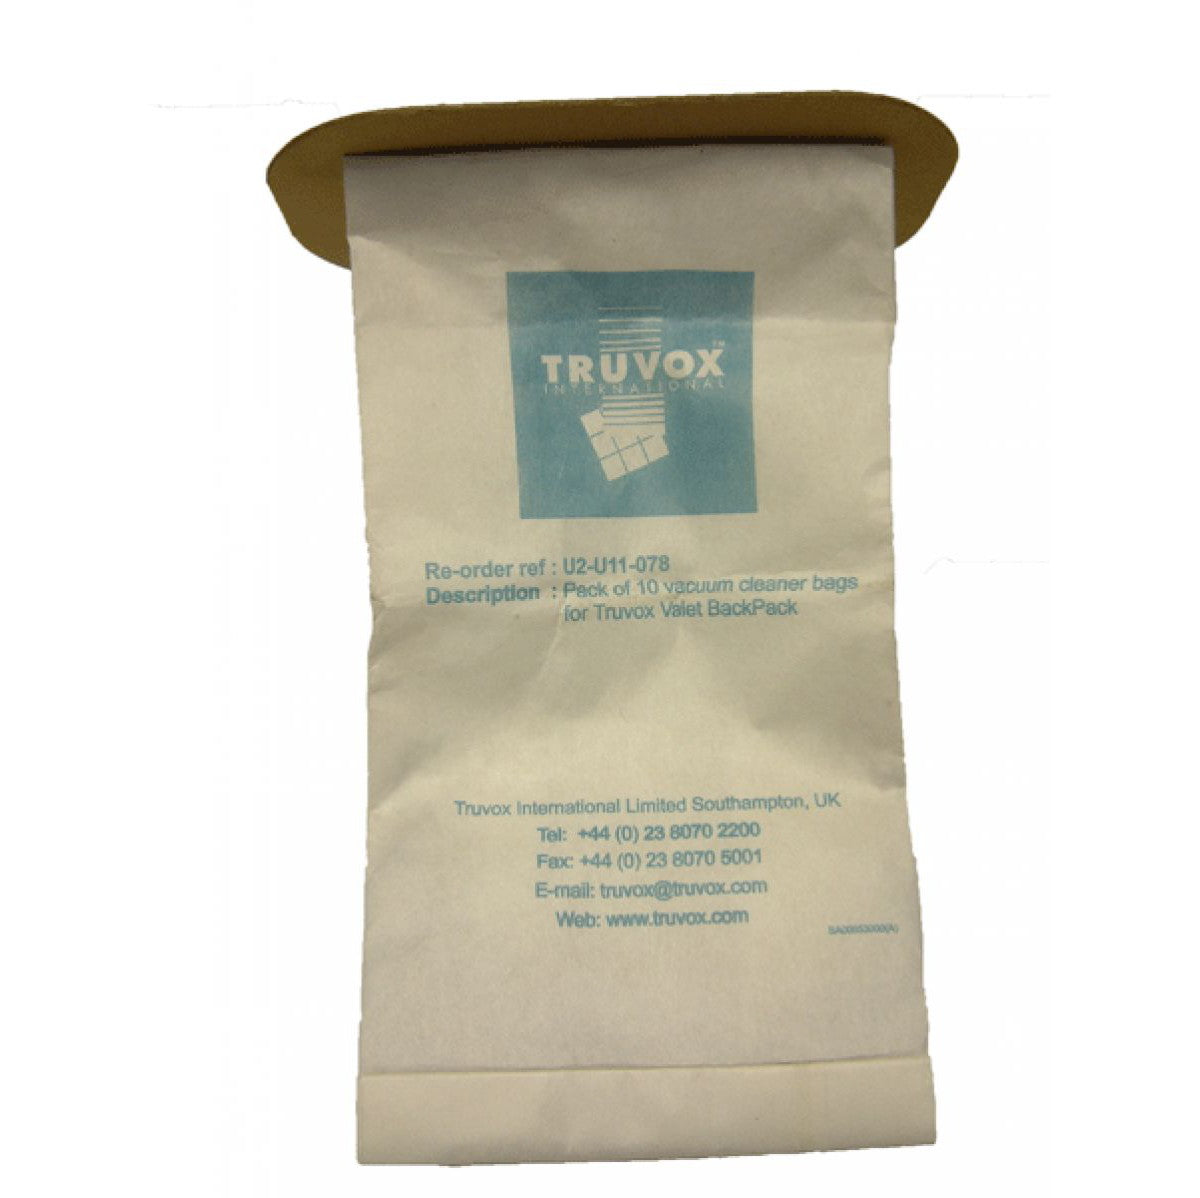 Truvox - Paper vacuum bags (pack of 10) (U2-U11-078)